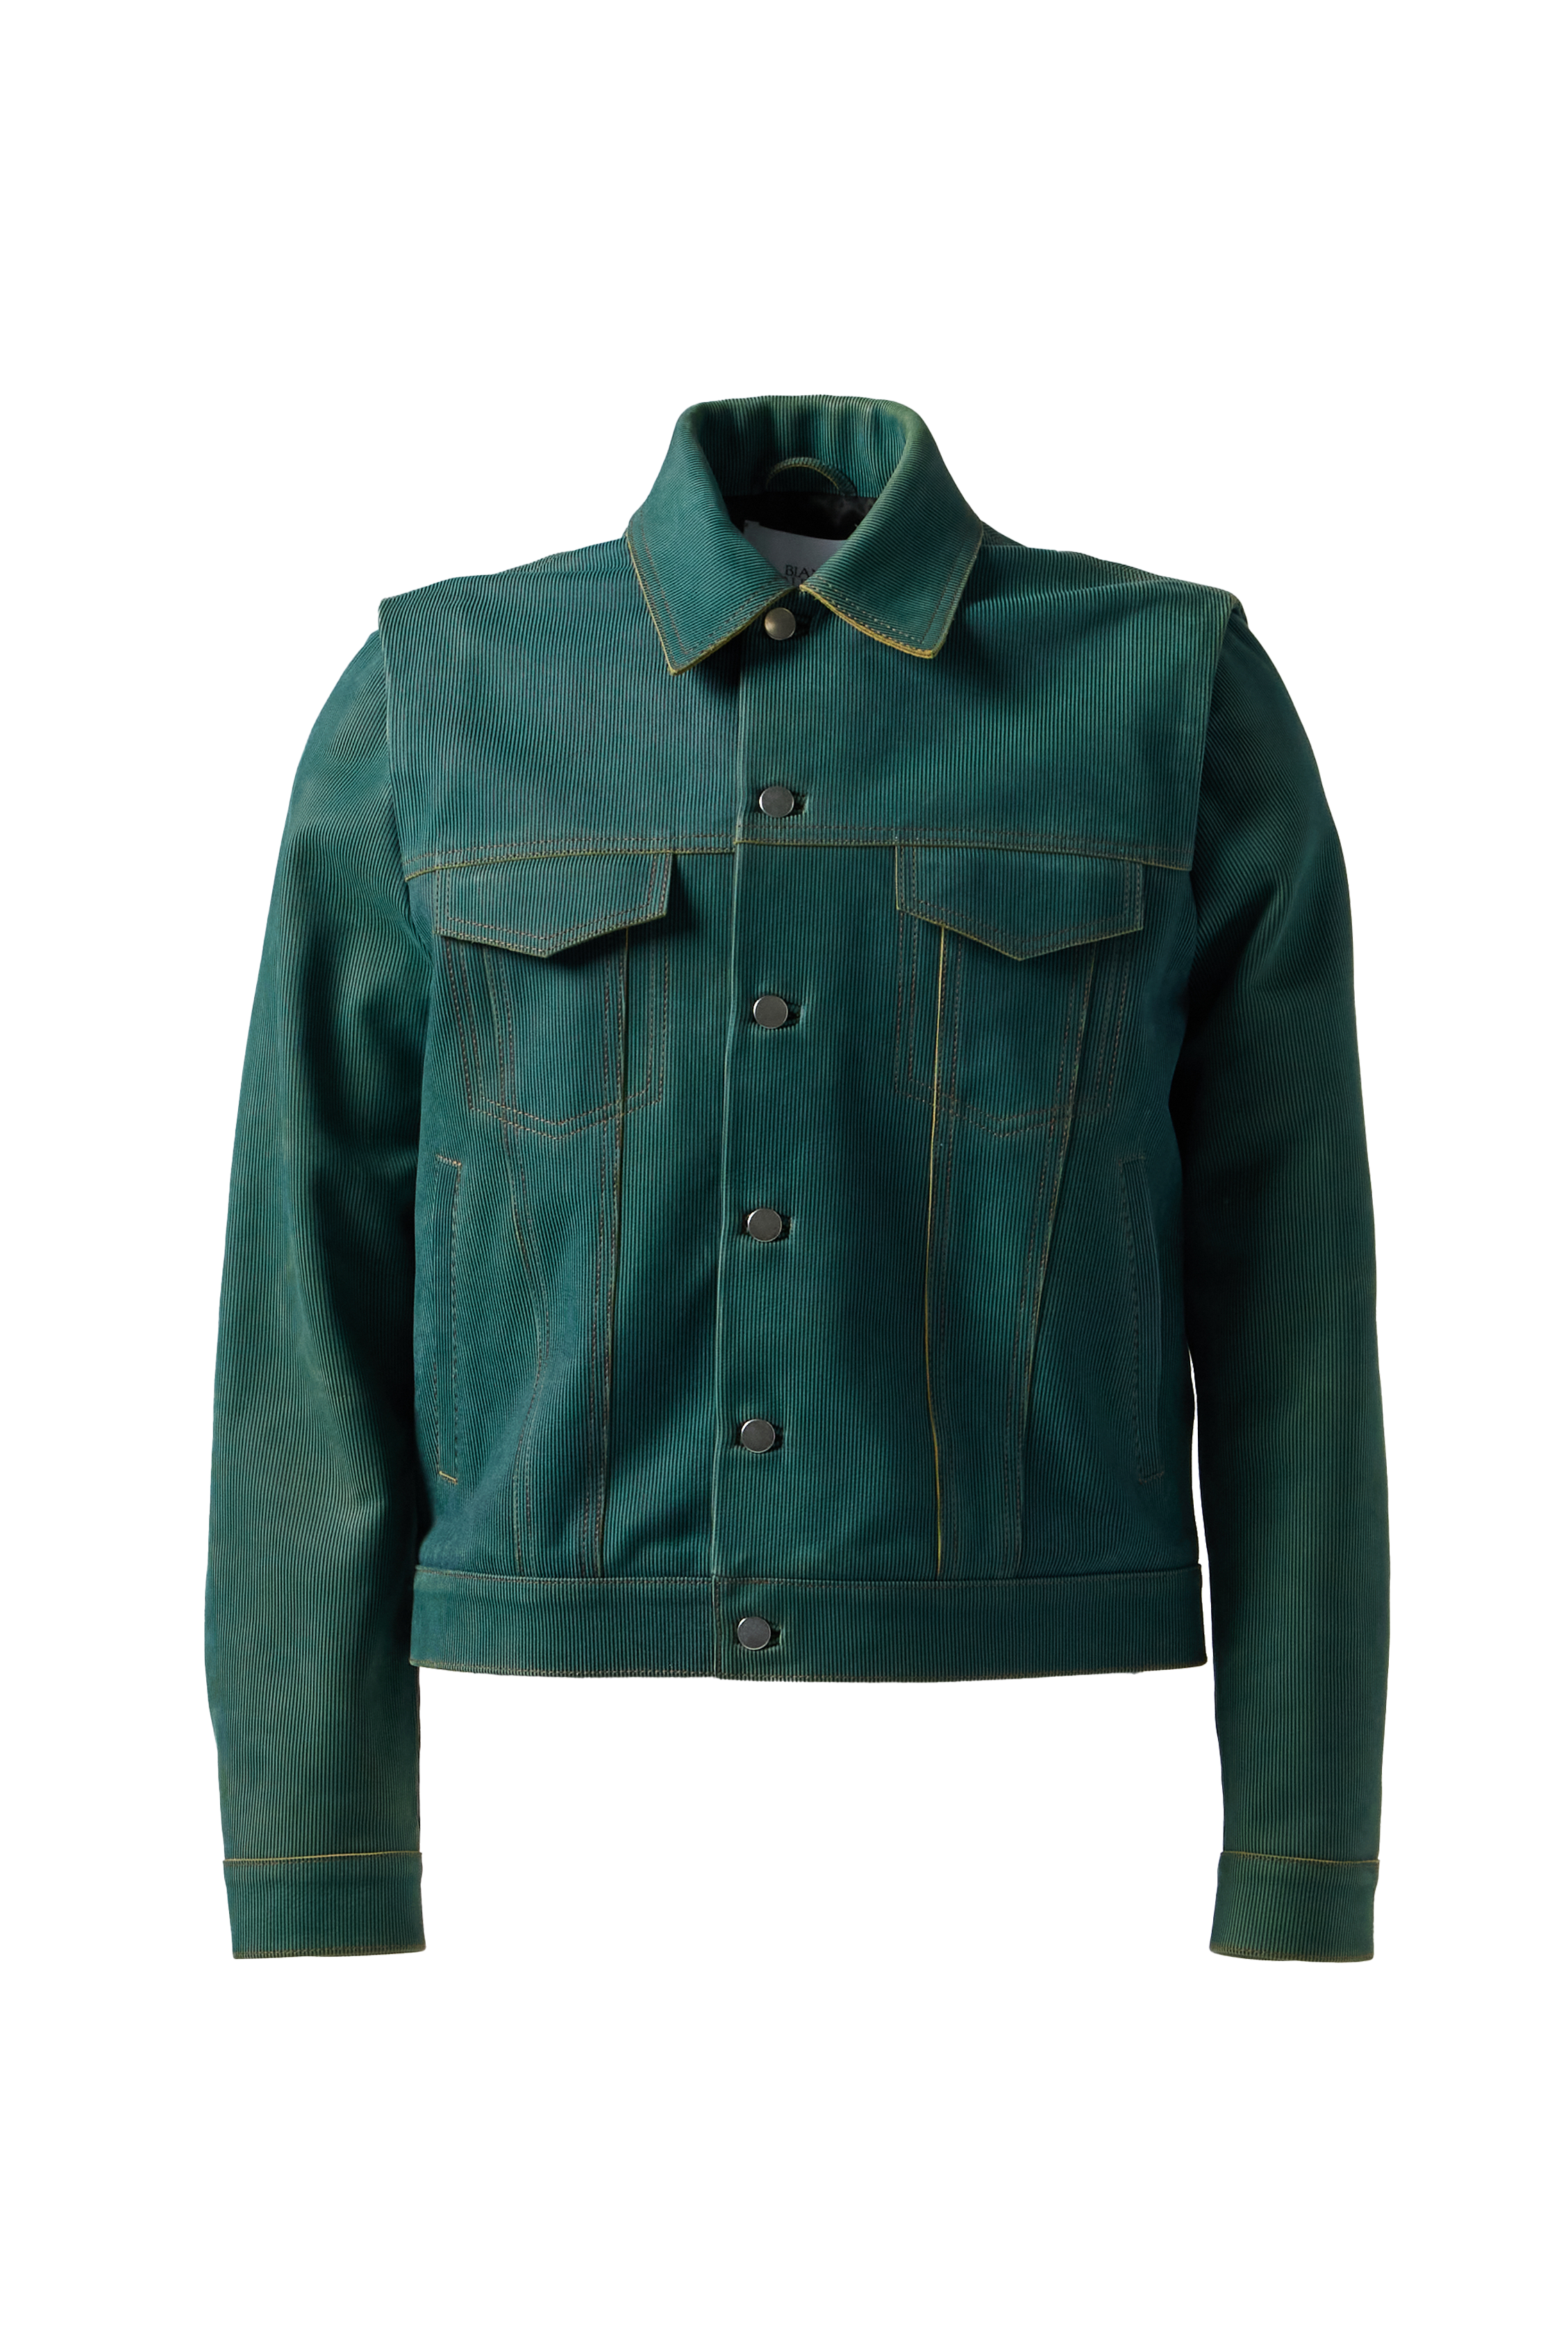 BIANCA SAUNDERS - Larda Leather Jacket product image